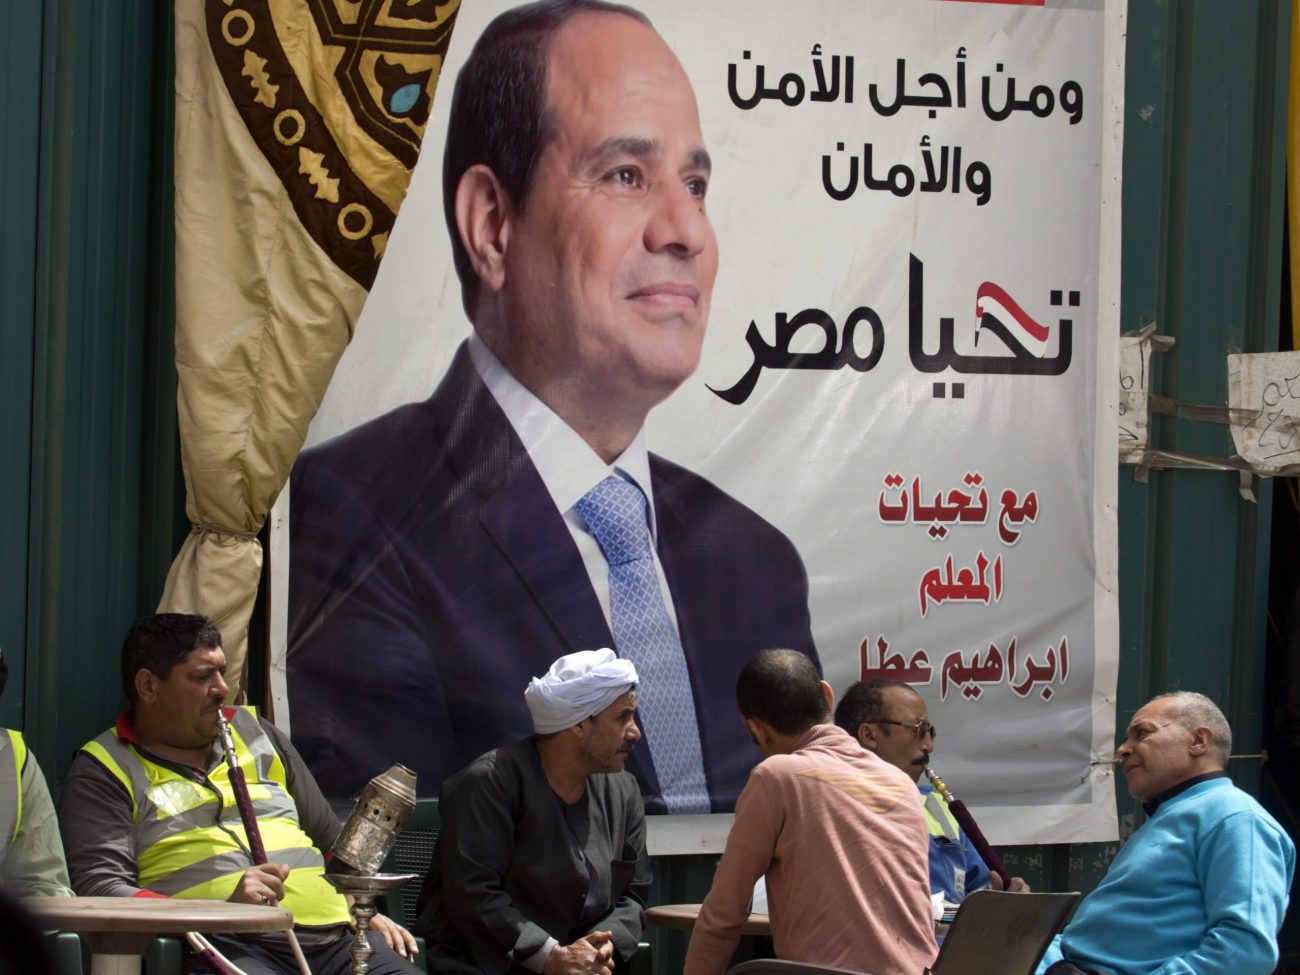 Rendimenti dei bond in Egitto fin sopra il 20%